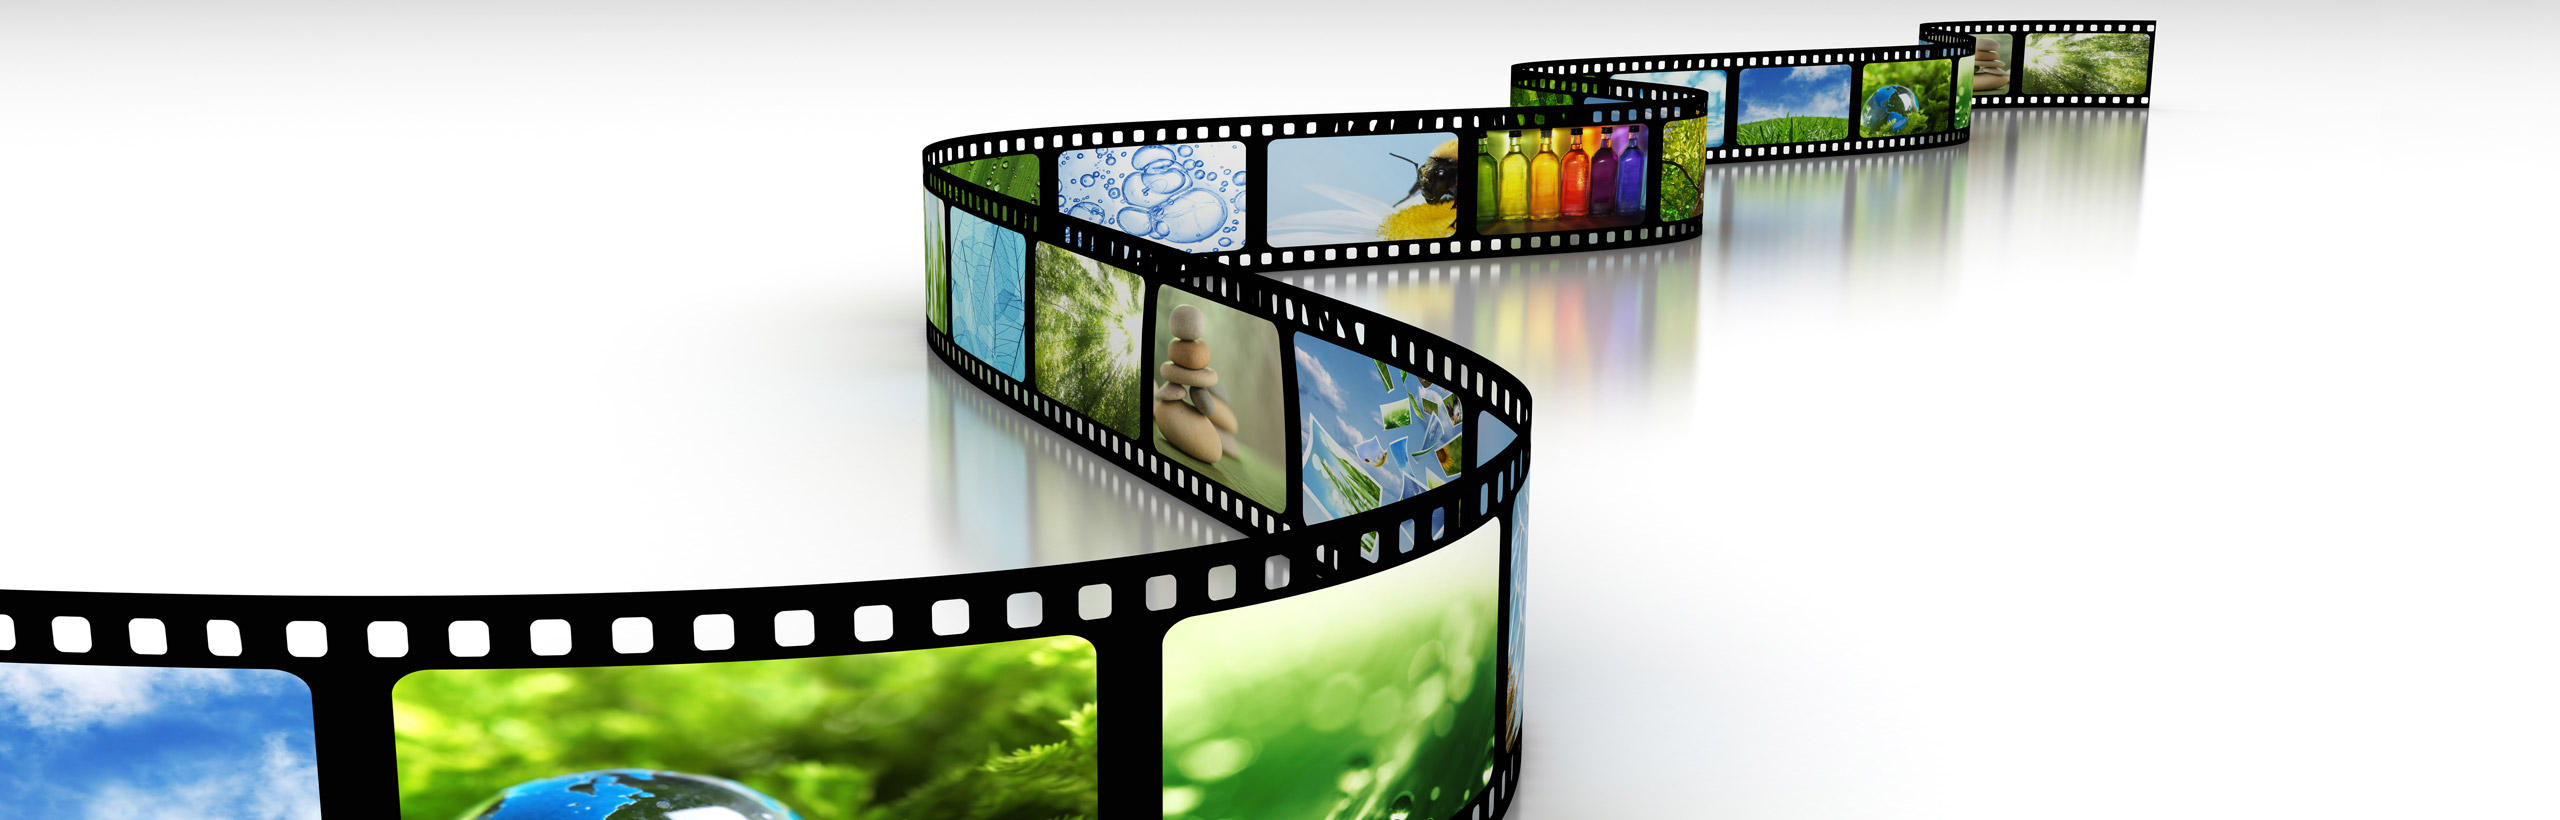 Creación y distribución de contenidos informativos y de entretenimiento audiovisual.